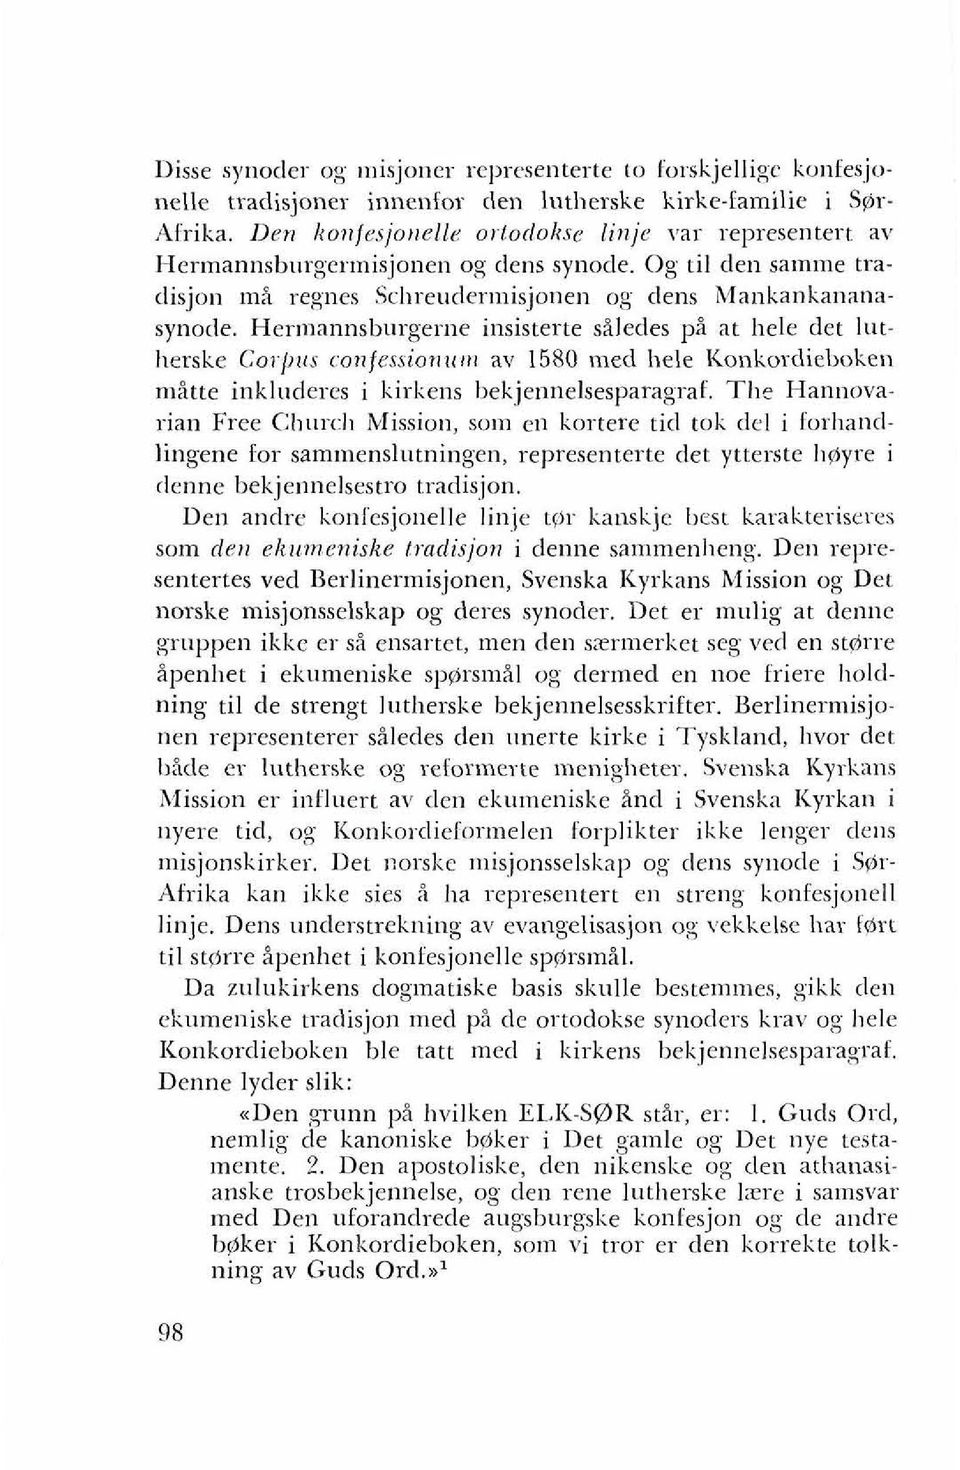 Hermannsburgerne insisterte siledes pi at liele det latllerske Coi-/~tts confessio~rrcr~r av 1580 med hele I<oilkordieboke~~ nistte inkluderes i kirkens bekjennelsesparagraf.